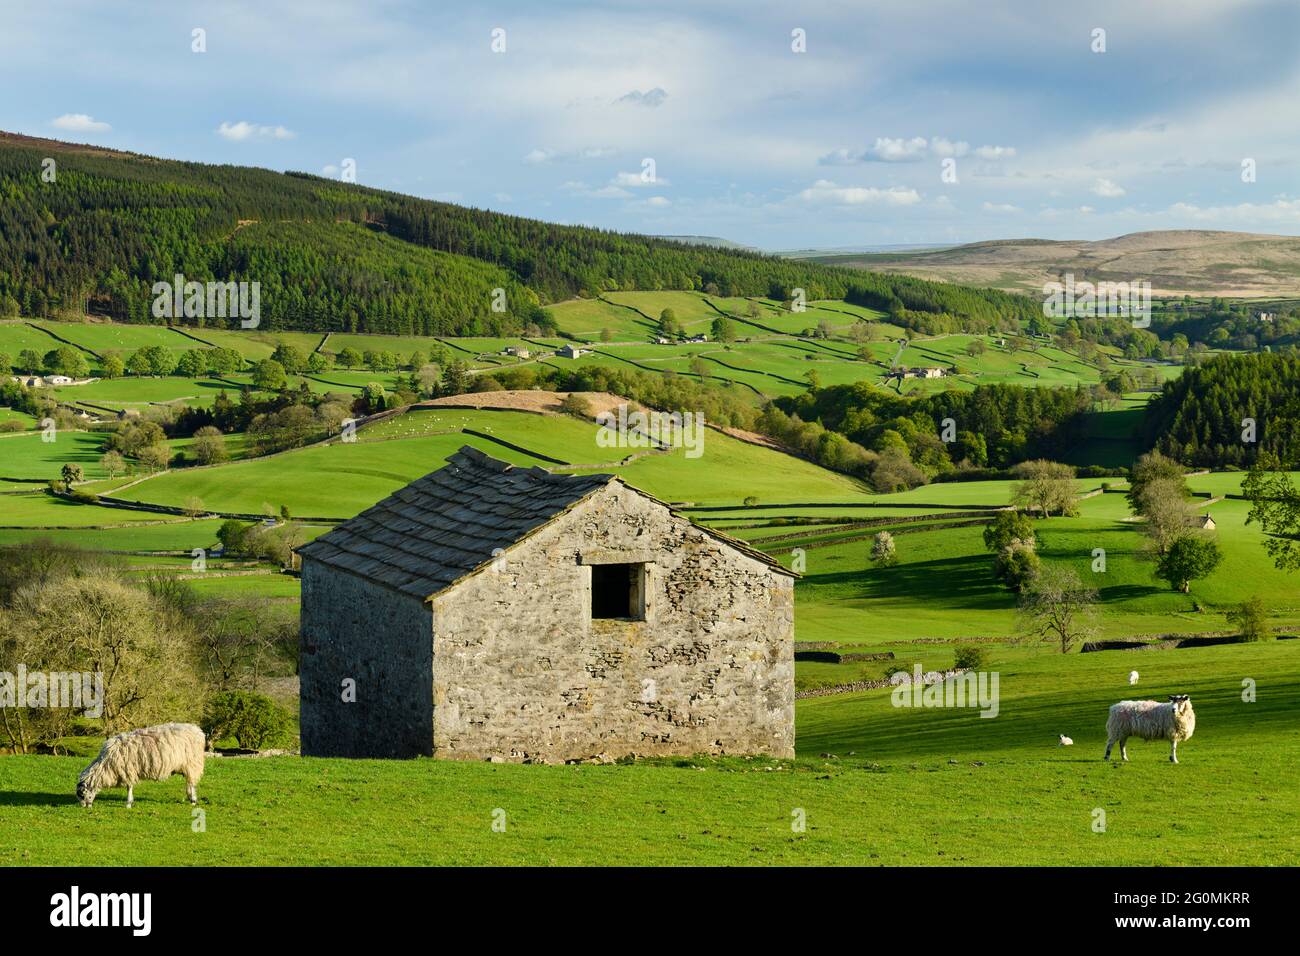 Paisaje rural de Wharfedale (valle, laderas, granero rústico aislado, paredes de piedra seca, pastos verdes de tierras de labranza) - Yorkshire Dales, Inglaterra, Reino Unido. Foto de stock